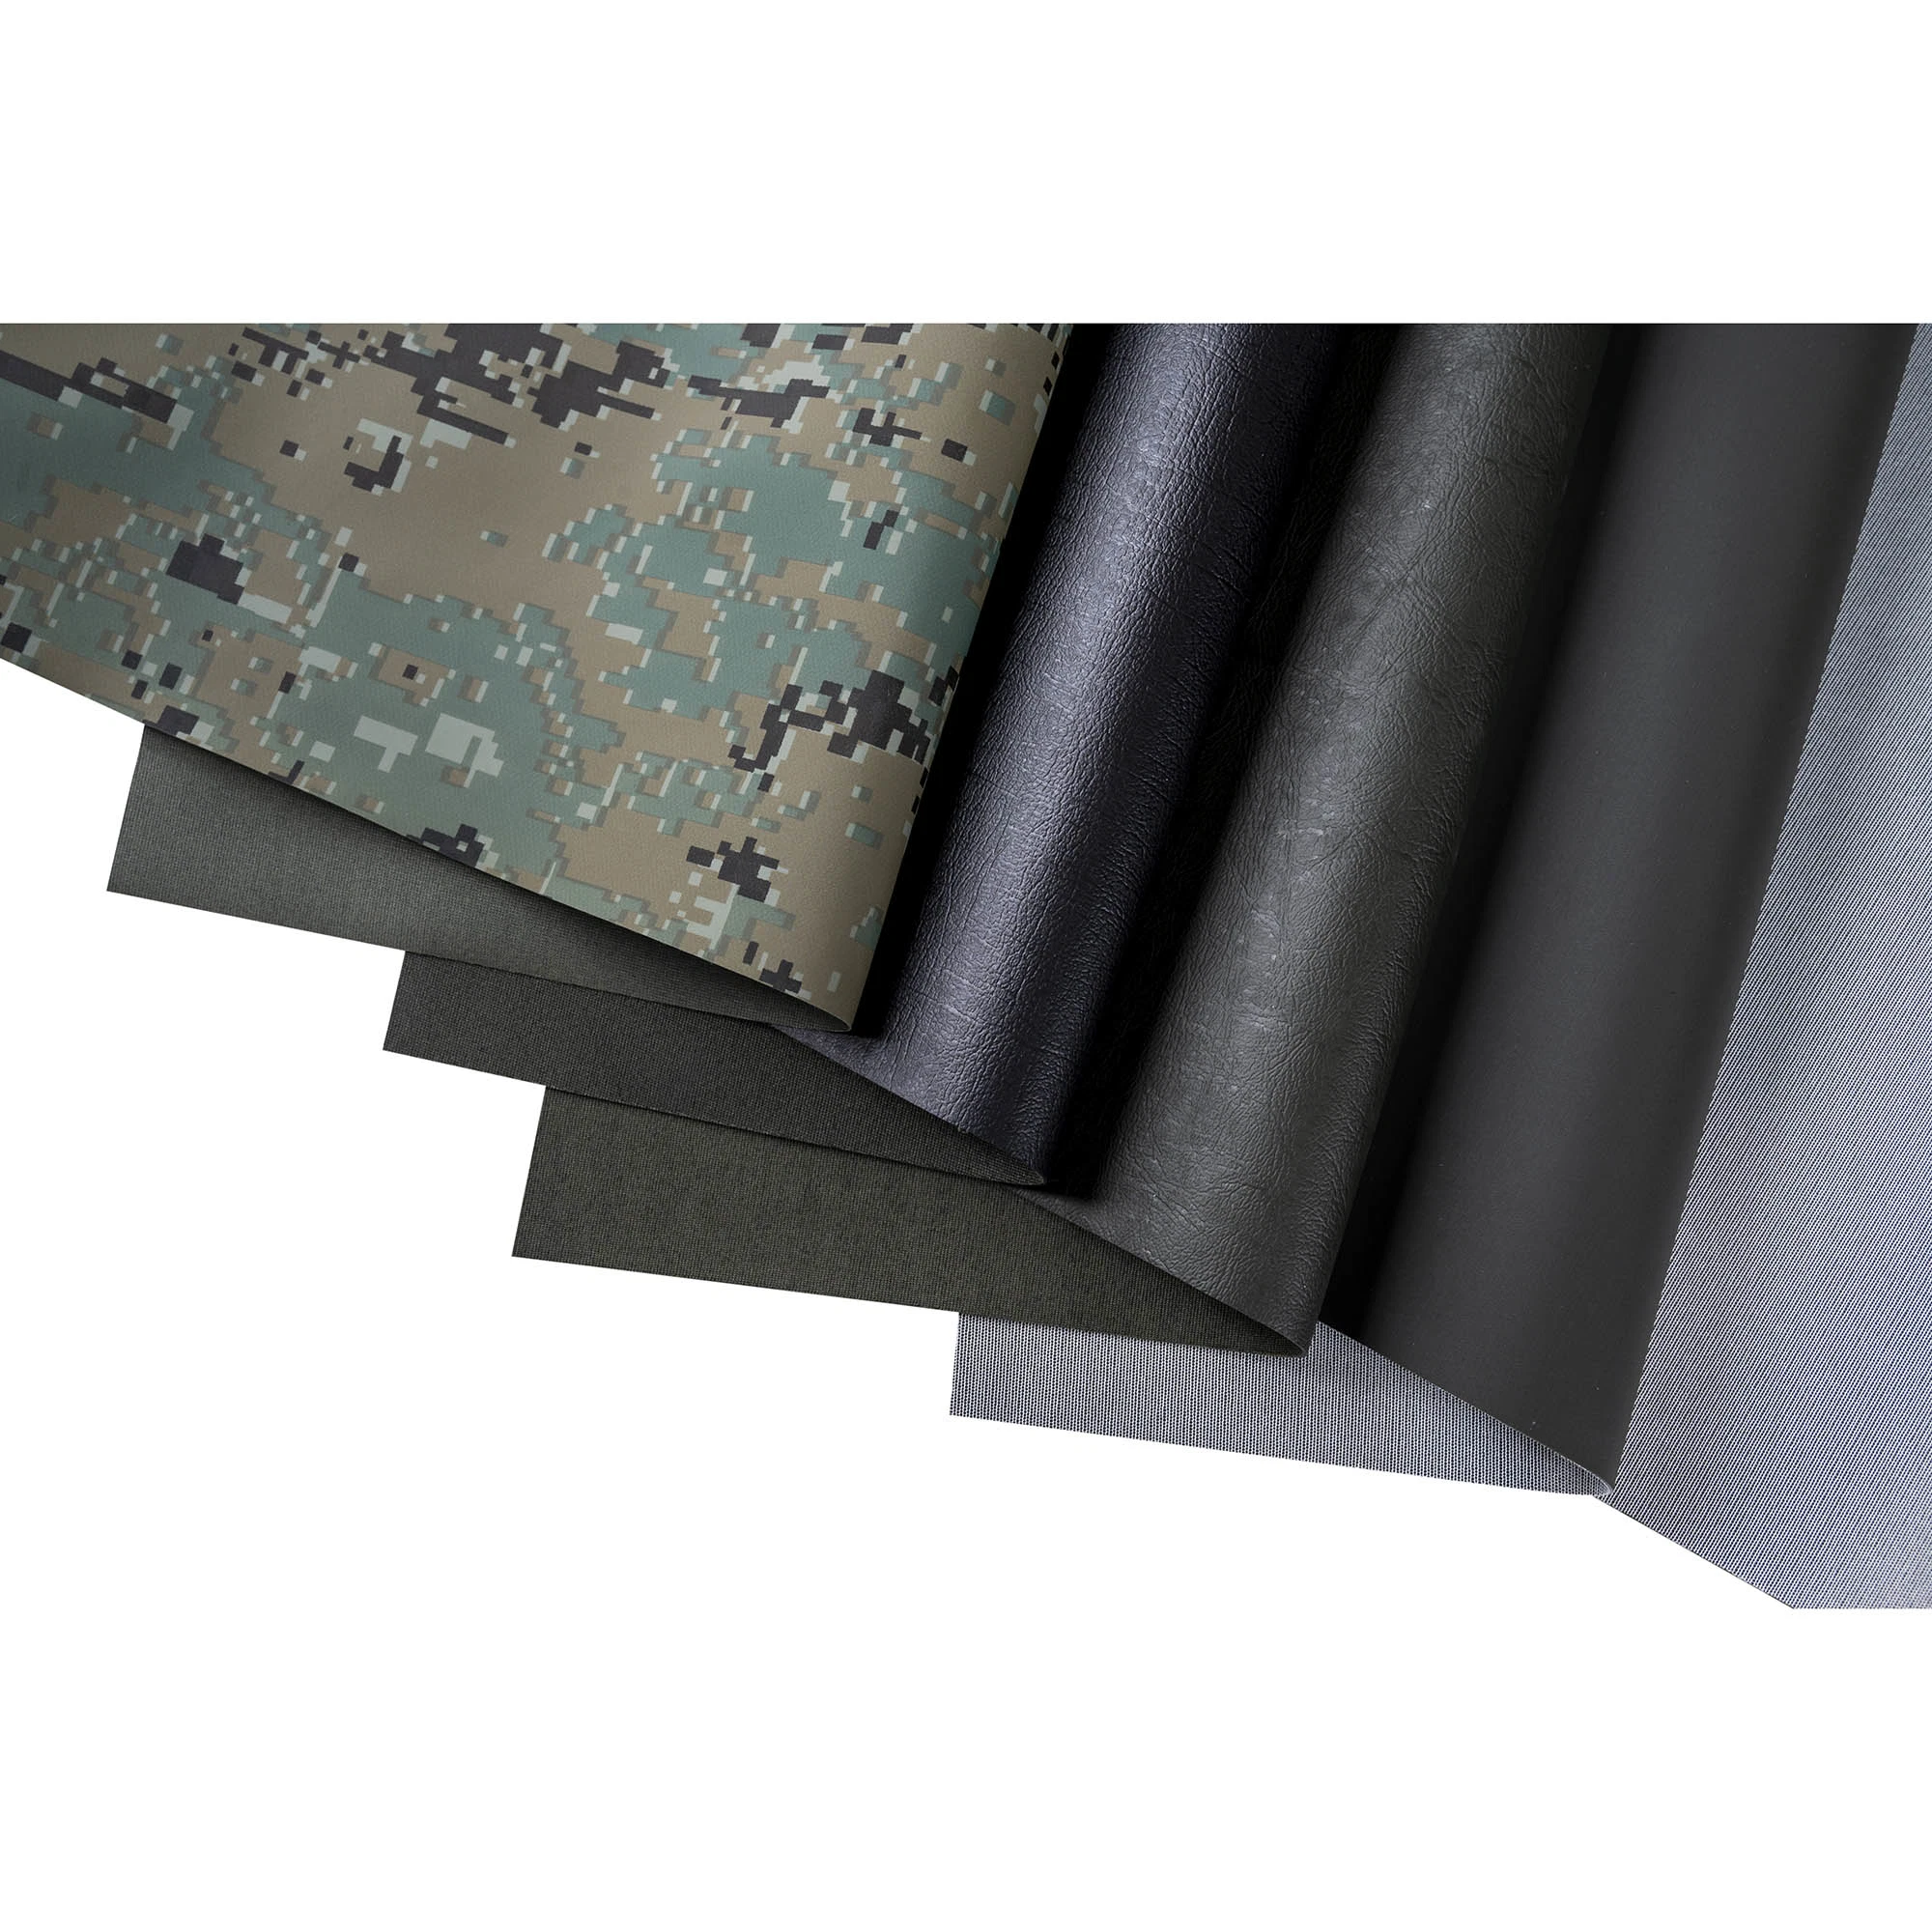 Высокое качество Sijia PVC материала для Wader одежды с покрытием из ПВХ ткани архив нейлон ПВХ